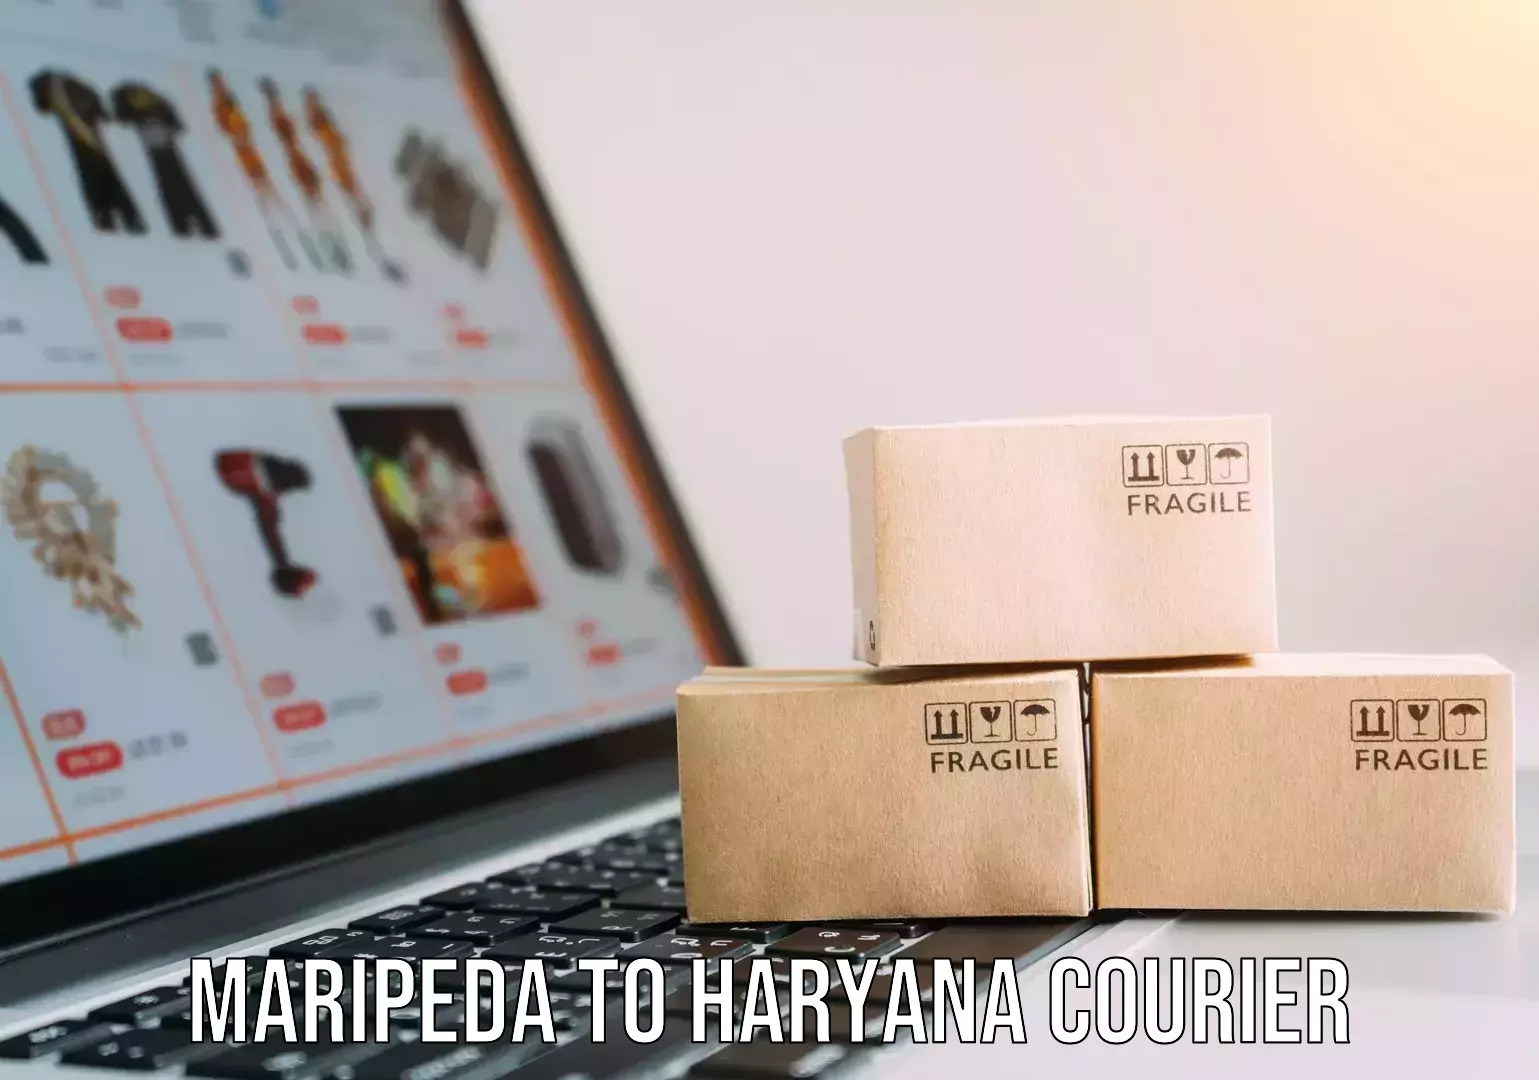 Specialized moving company Maripeda to Haryana